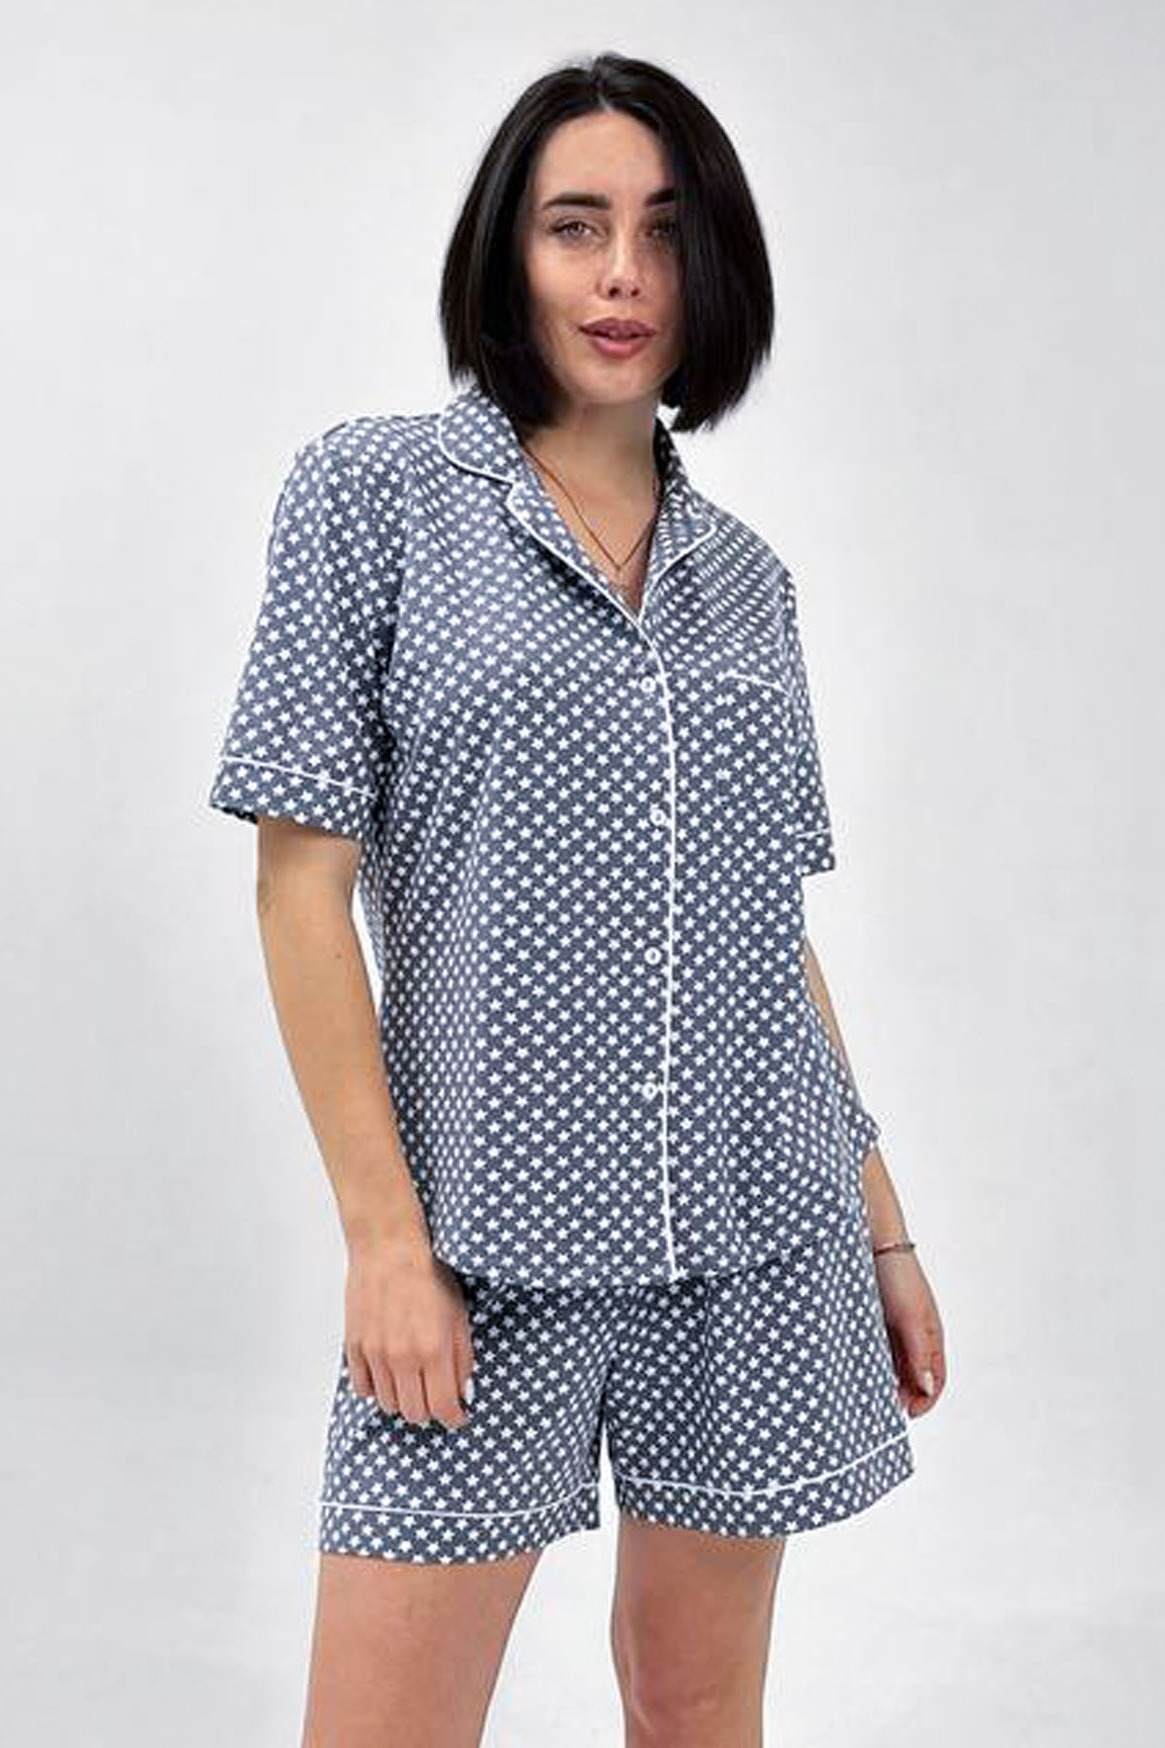 Комплект: блуза и шортики Roksana, Украина 16048-1524 фото